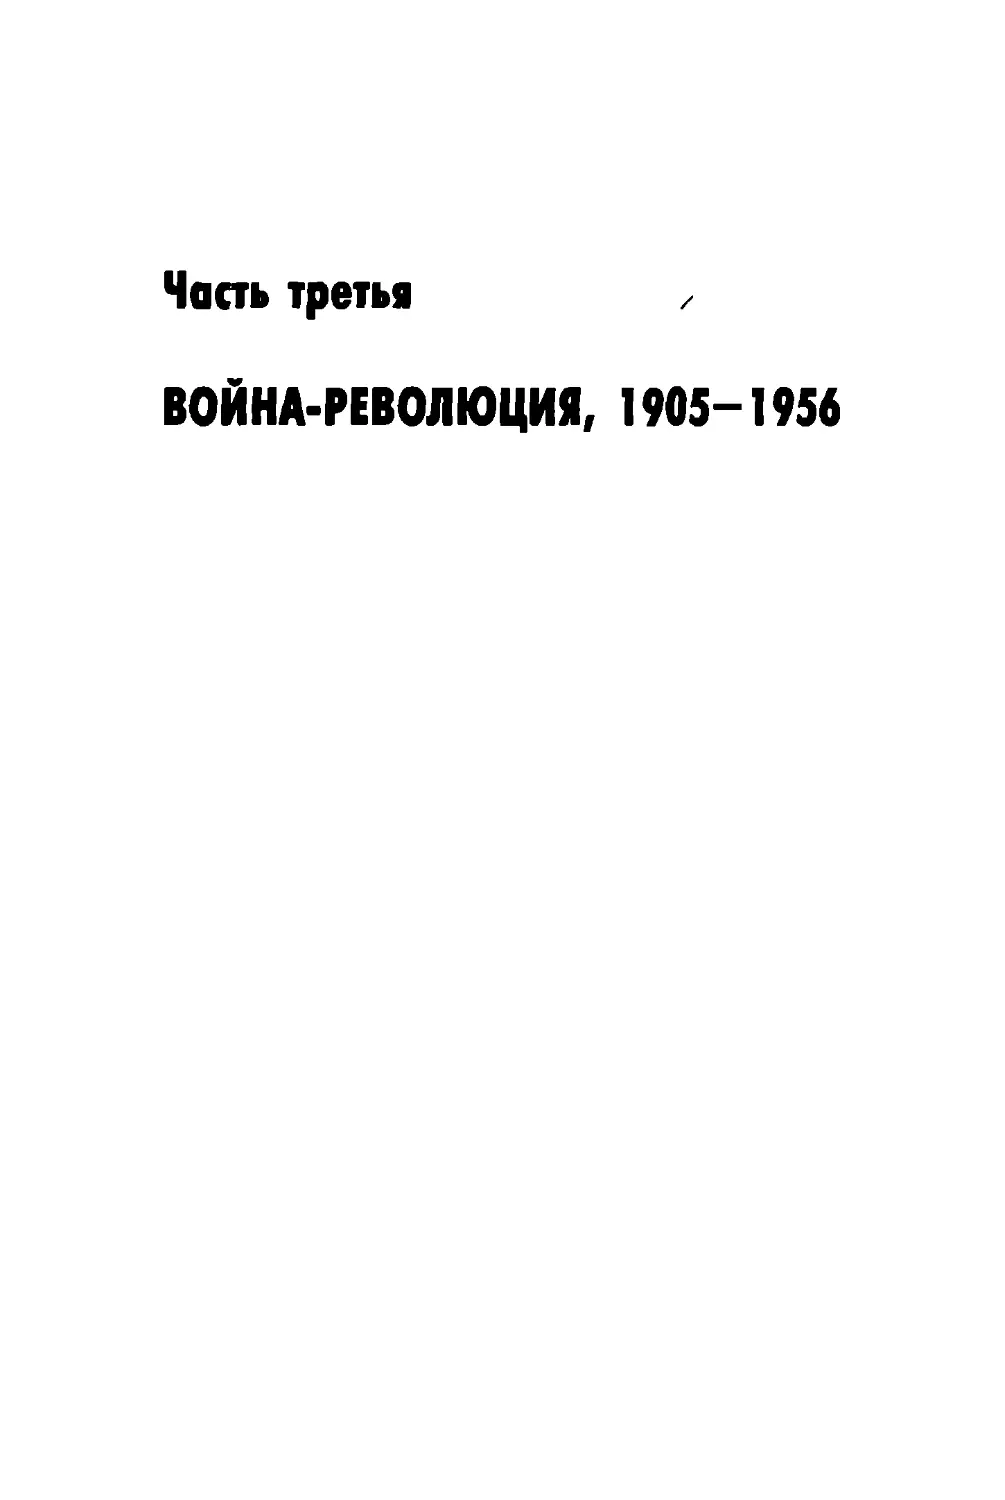 Часть третья. ВОЙНА-РЕВОЛЮЦИЯ, 1905-1956